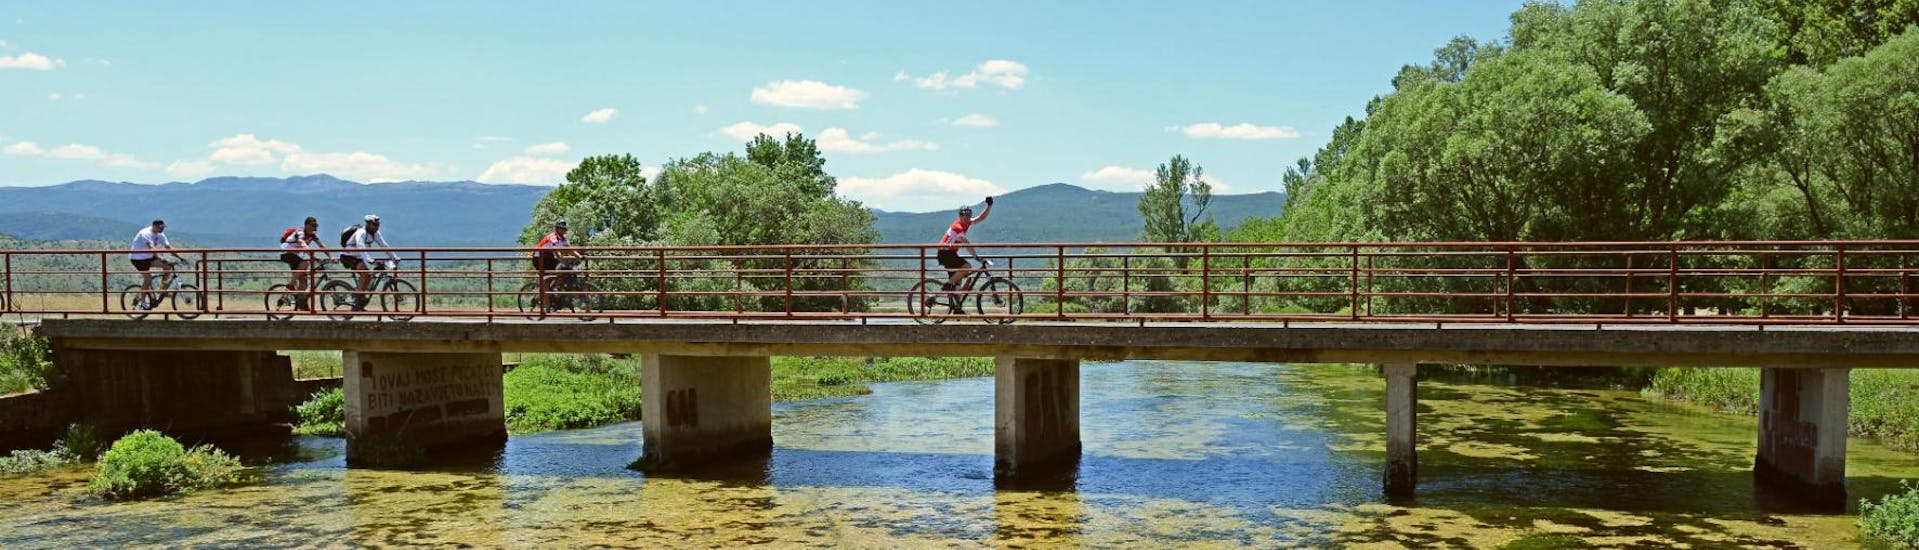 Pendant l'excursion en vélo VTT à Cetina à partir de Sinj, les cyclistes traversent un pont sous la conduite d'un guide certifié de l'hôtel Alkar.